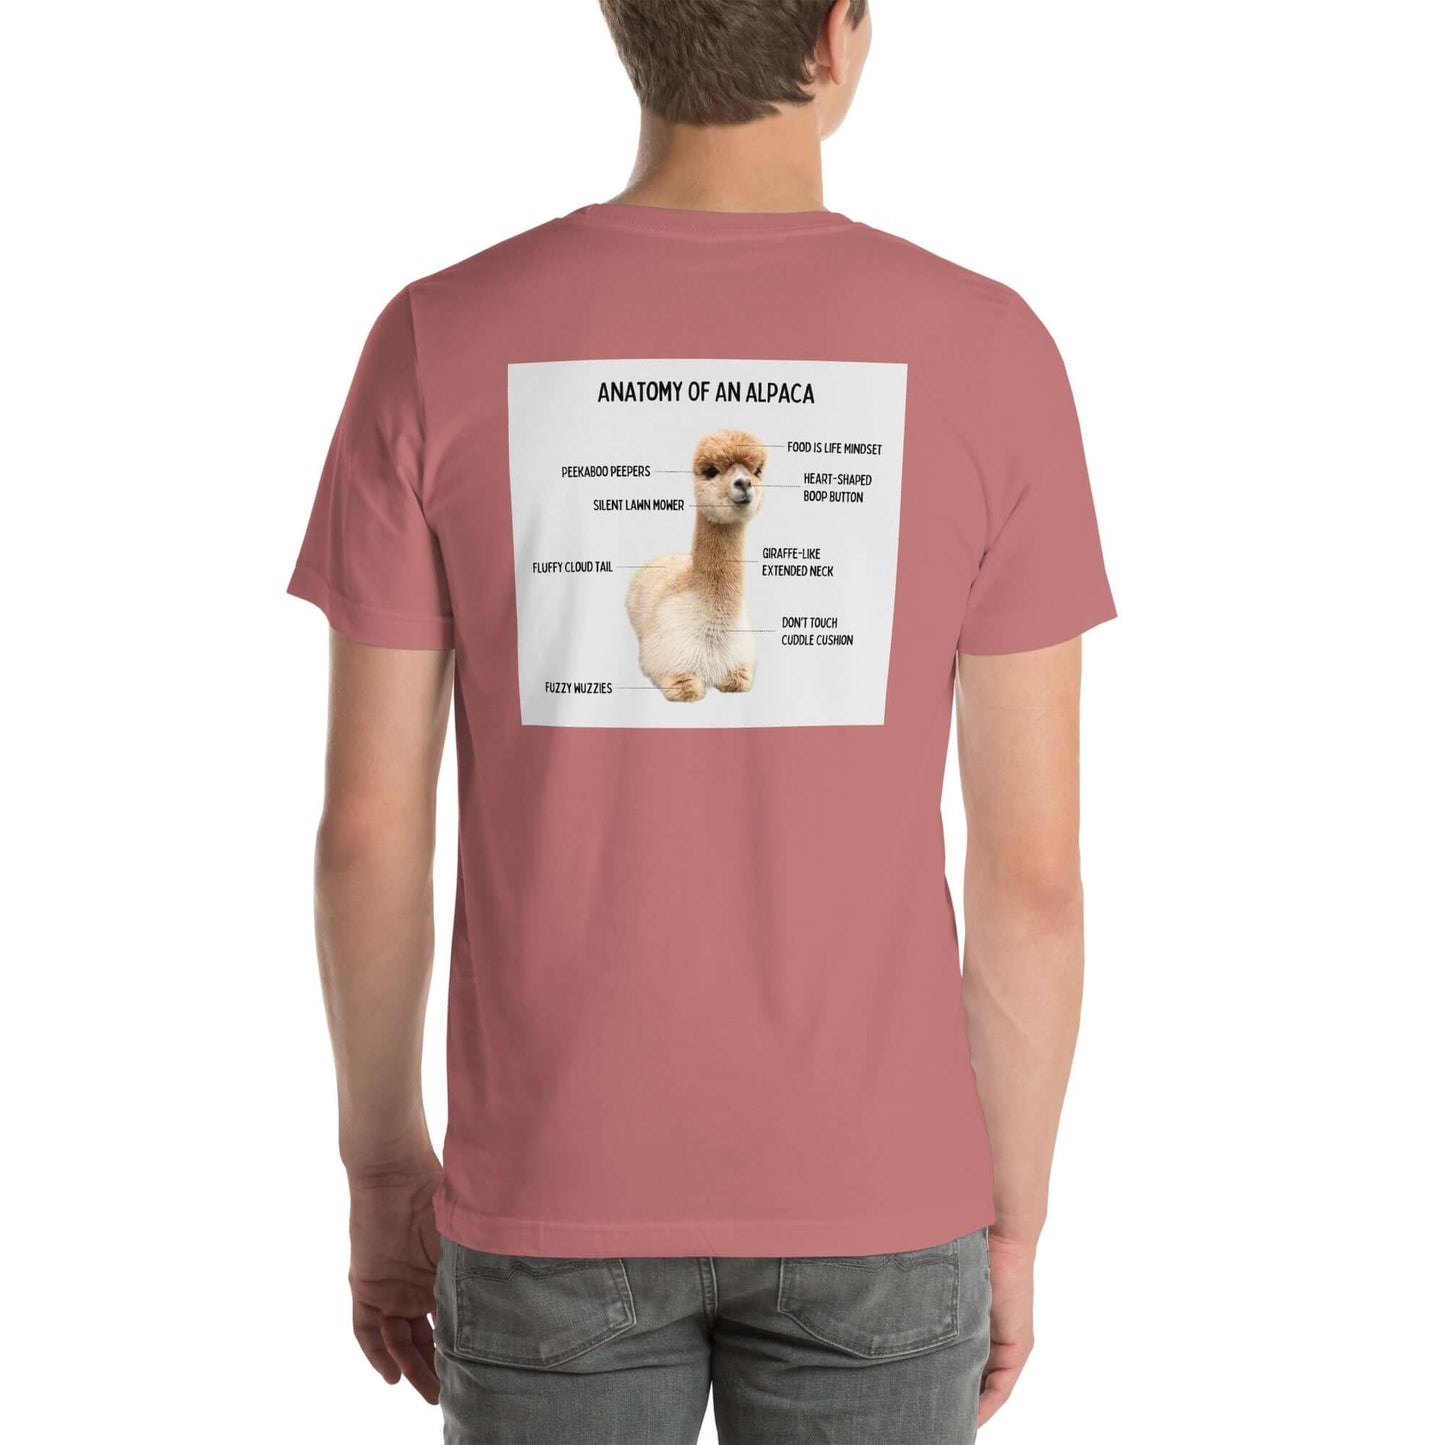 Bequemes und humorvolles T-Shirt für Alpaka-Freunde im Alpaka Store erhältlich